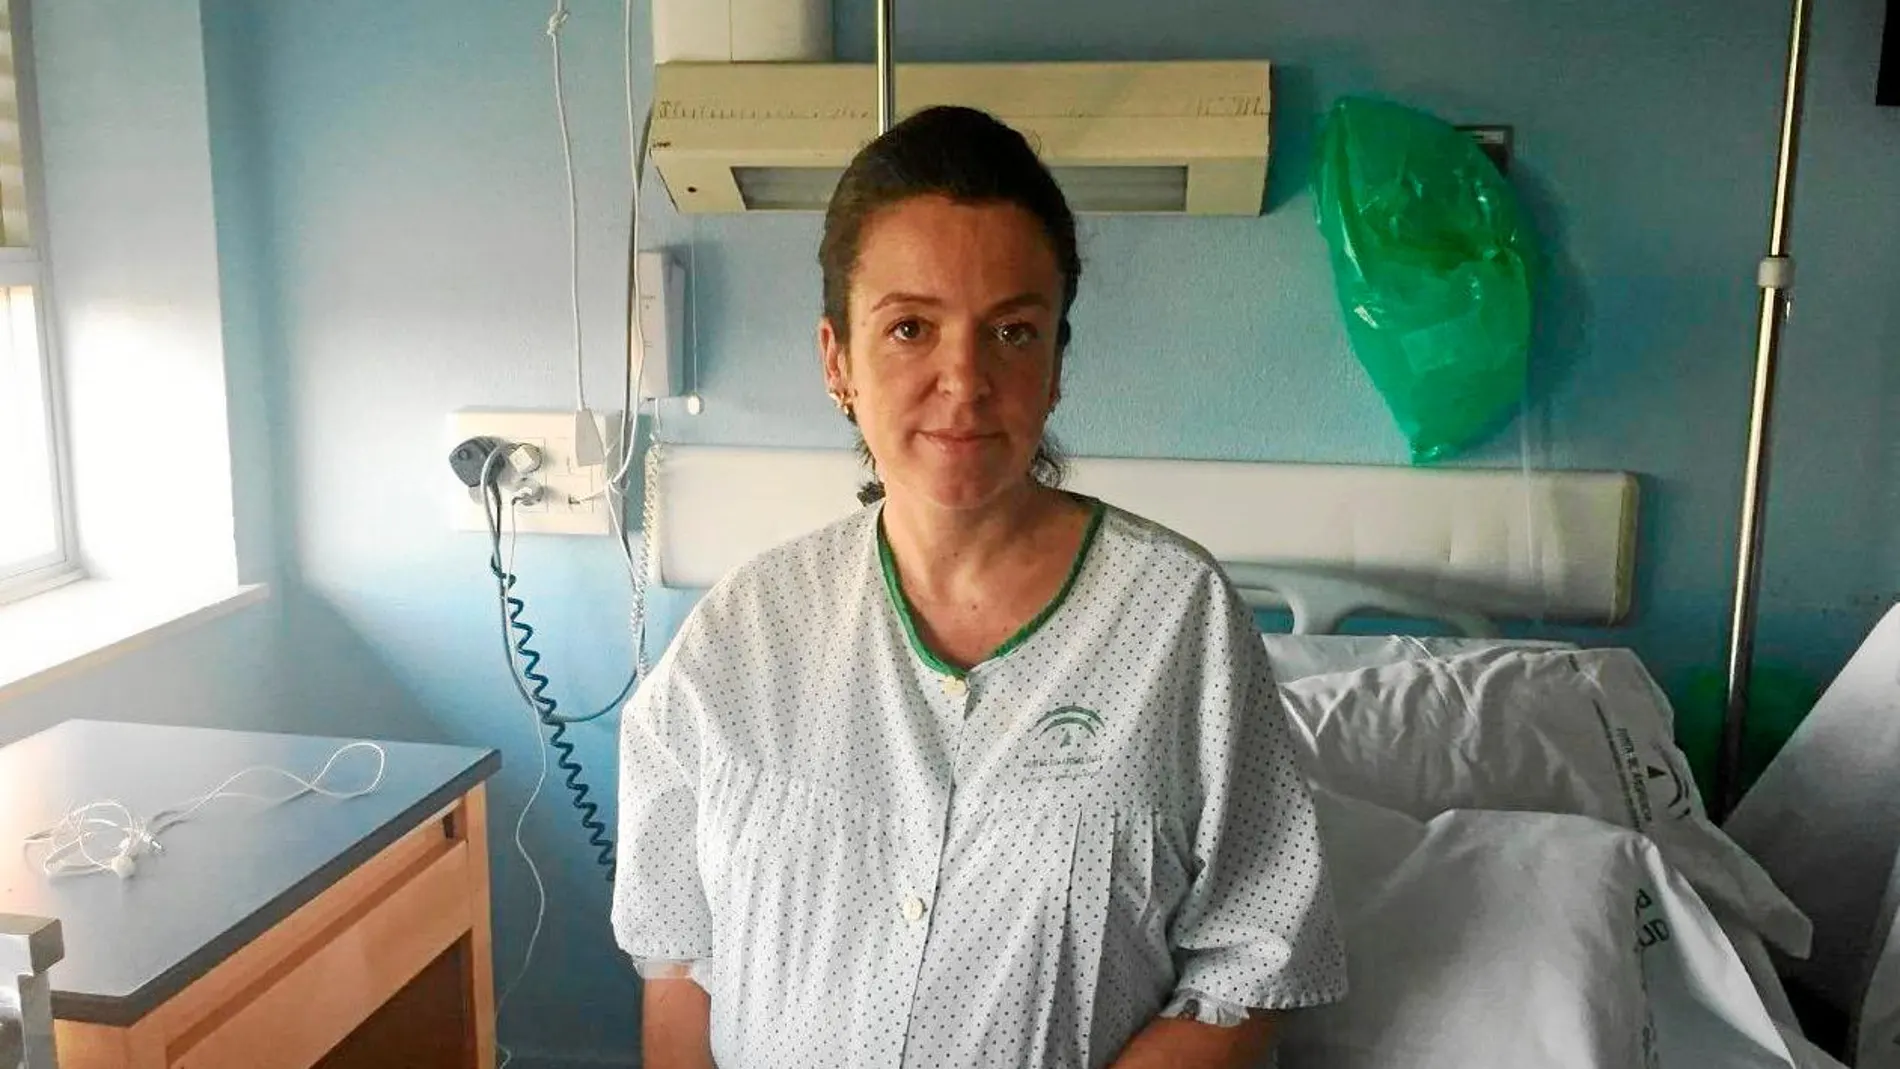 Concepción Román, a las 33 semanas de gestación, está ingresada en el hospital Virgen del Rocío por tener un embarazo de riesgo. Foto: La Razón